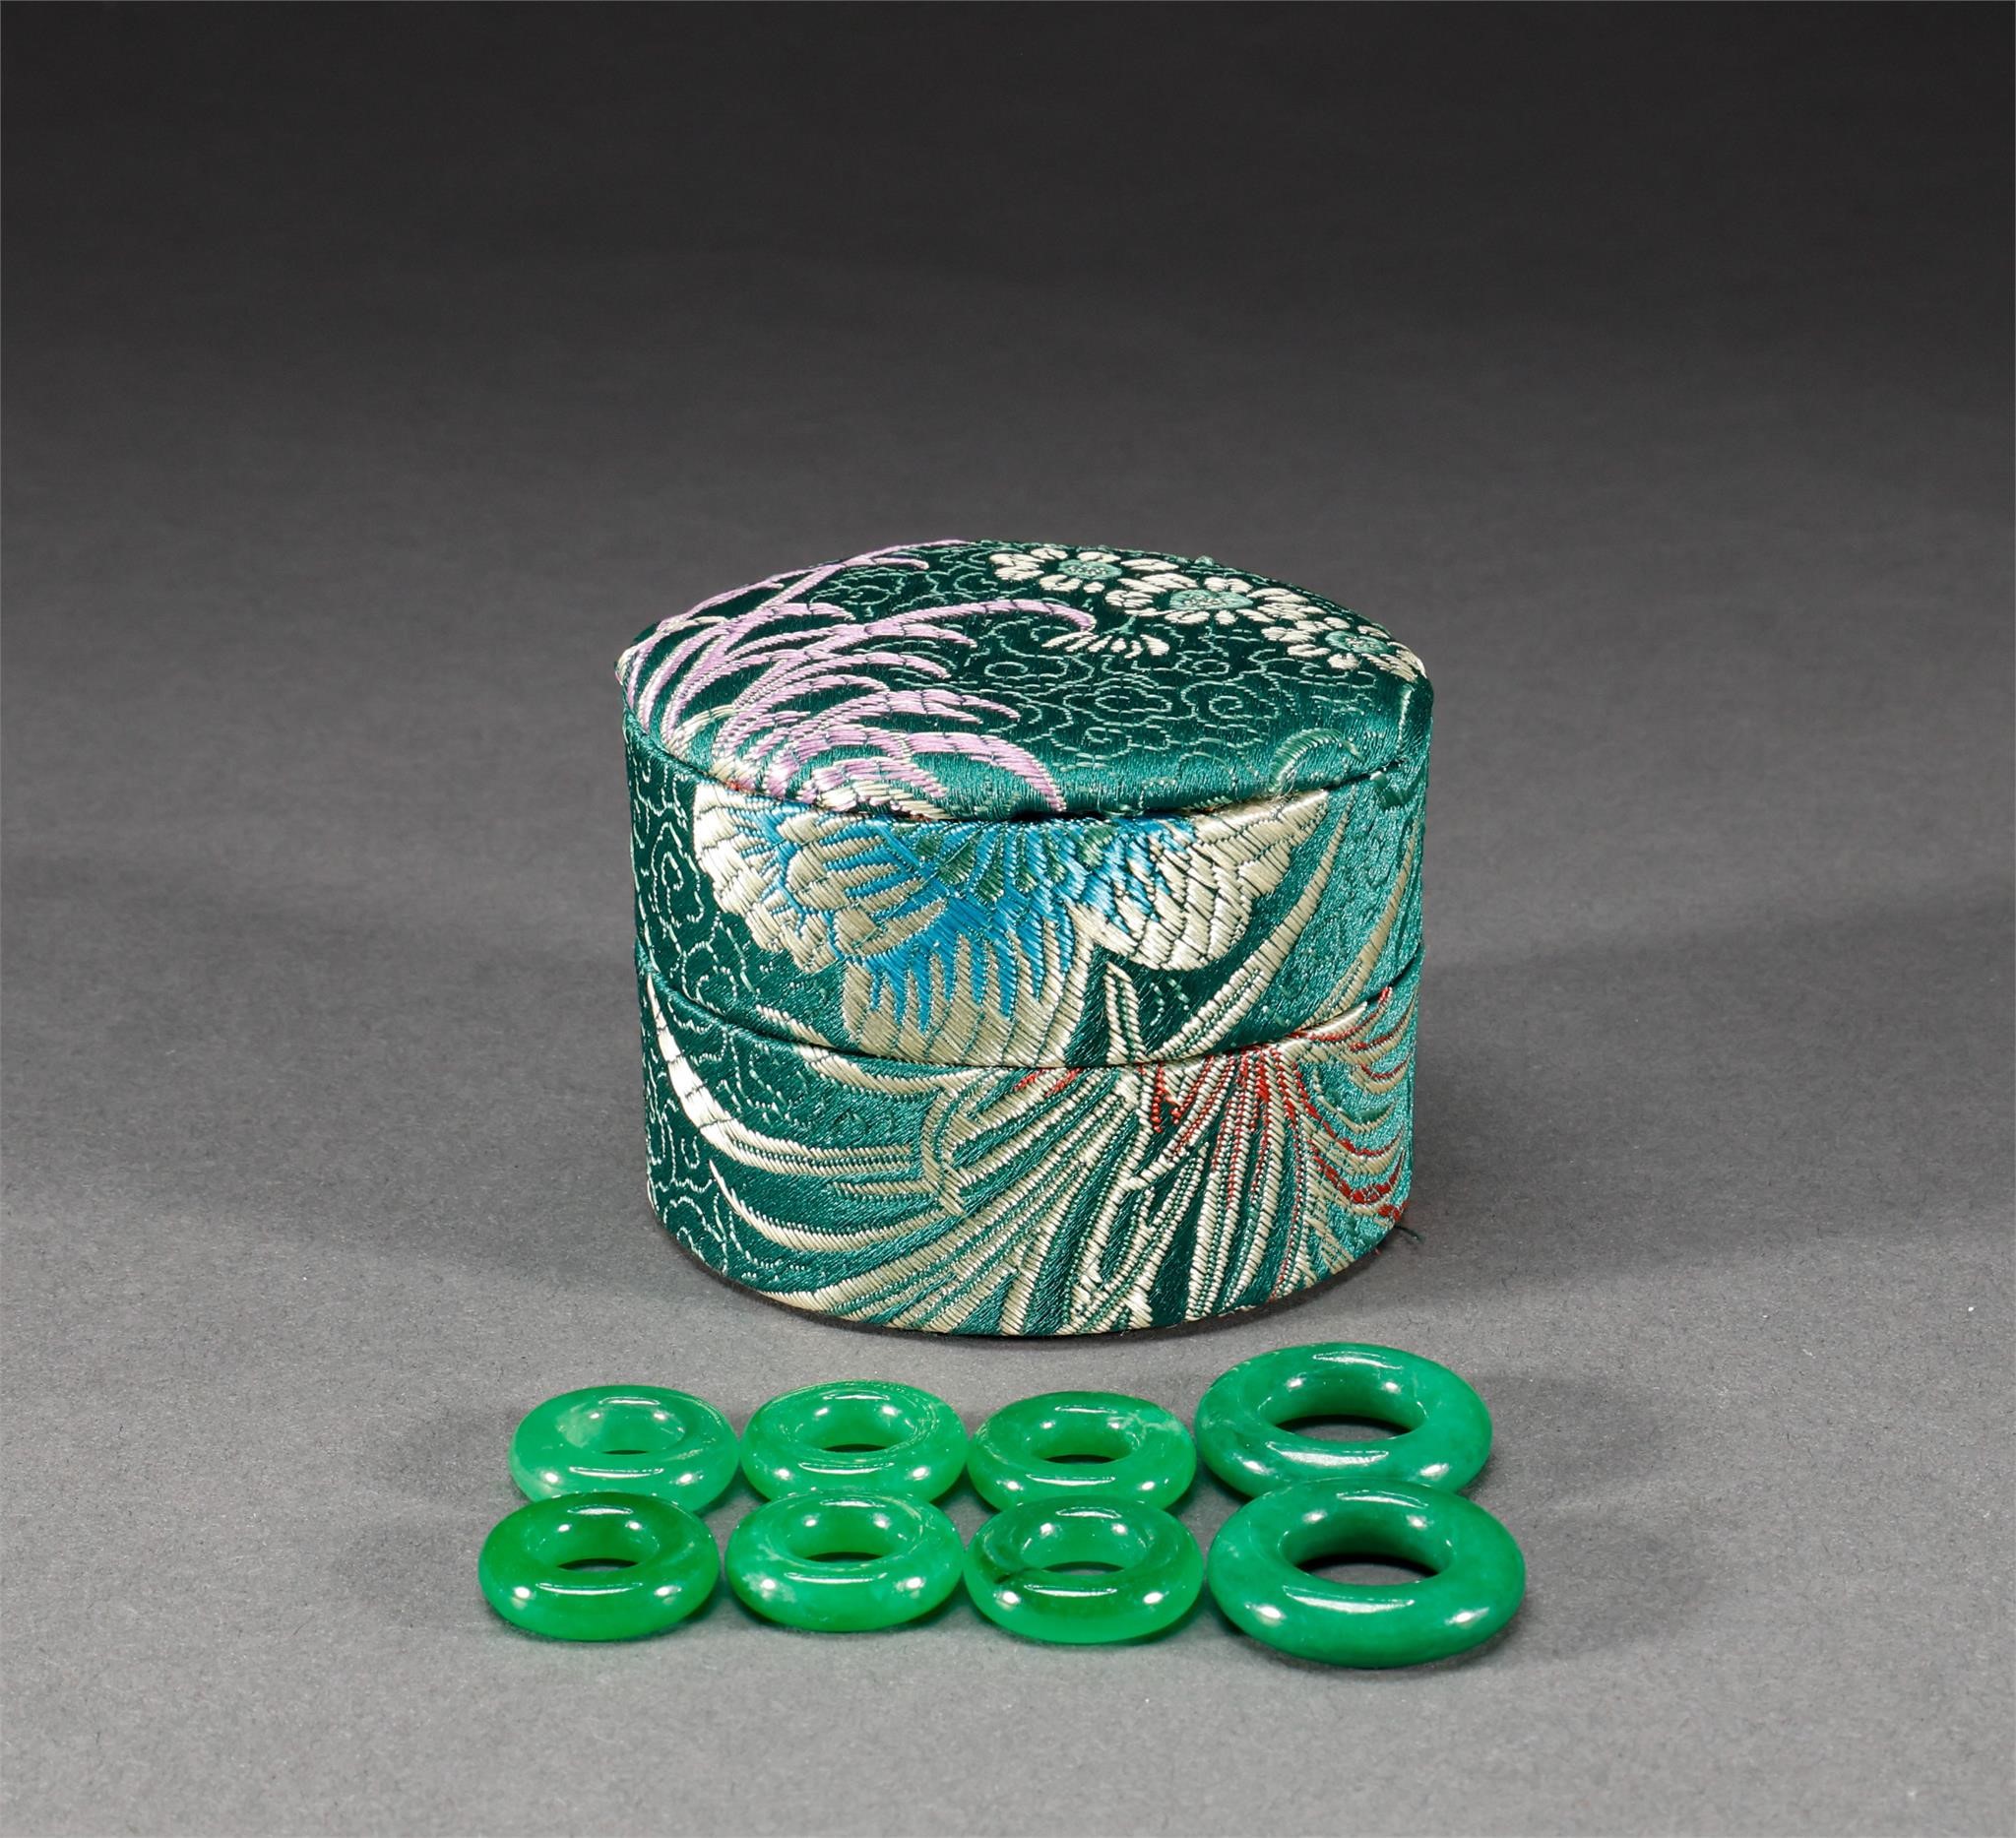 Qing Dynasty emerald kasaya ring a group